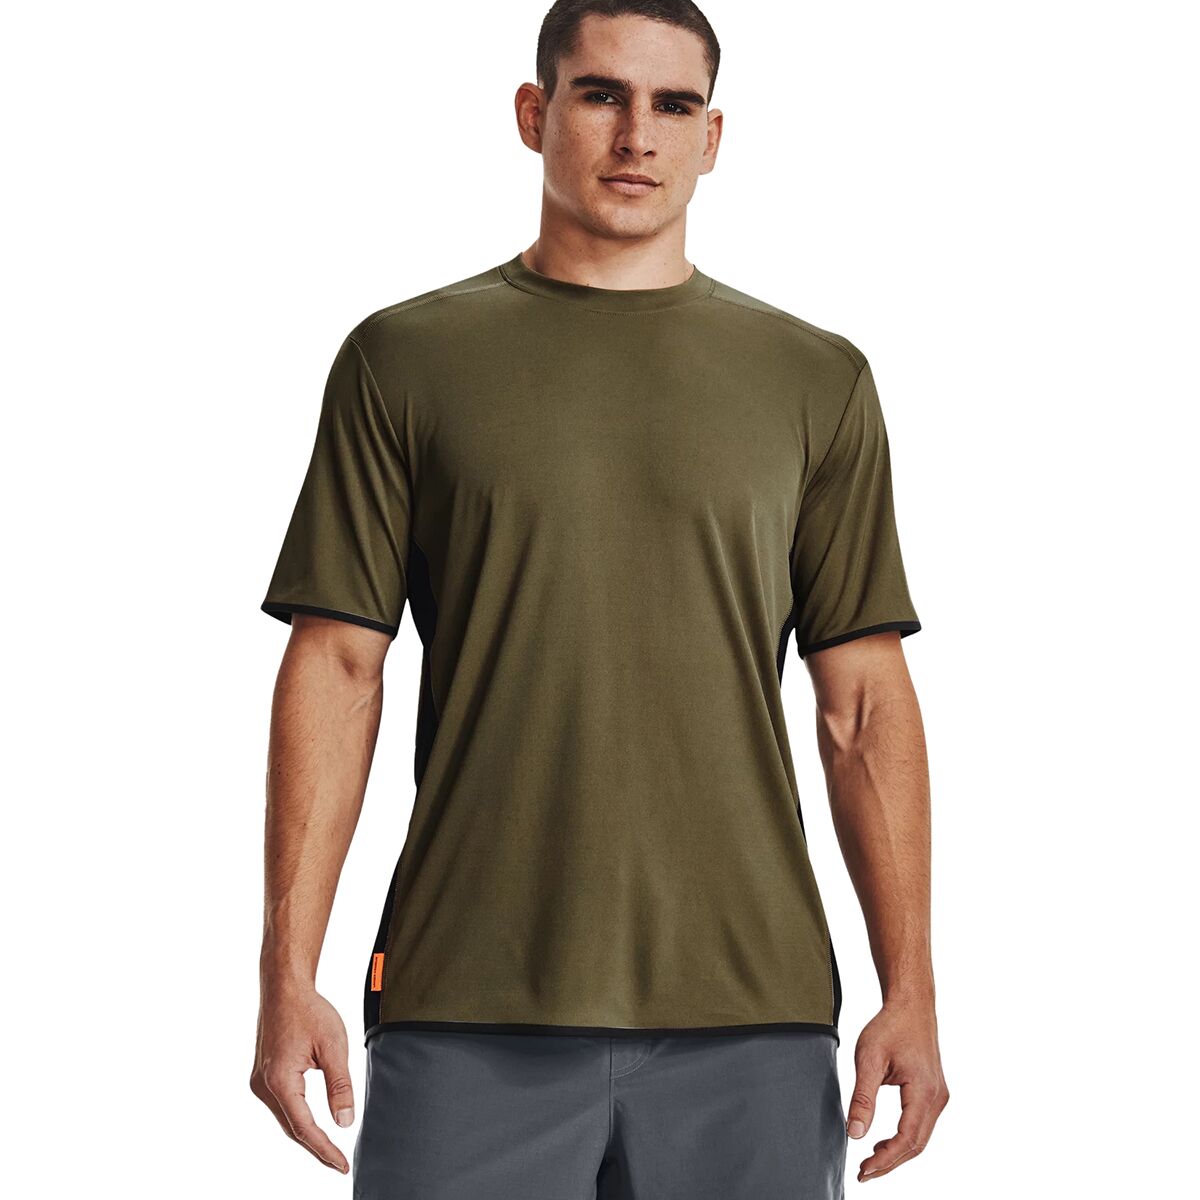 Under Armour ISO-Chill Outdoor Trek Short-Sleeve Shirt - Men's